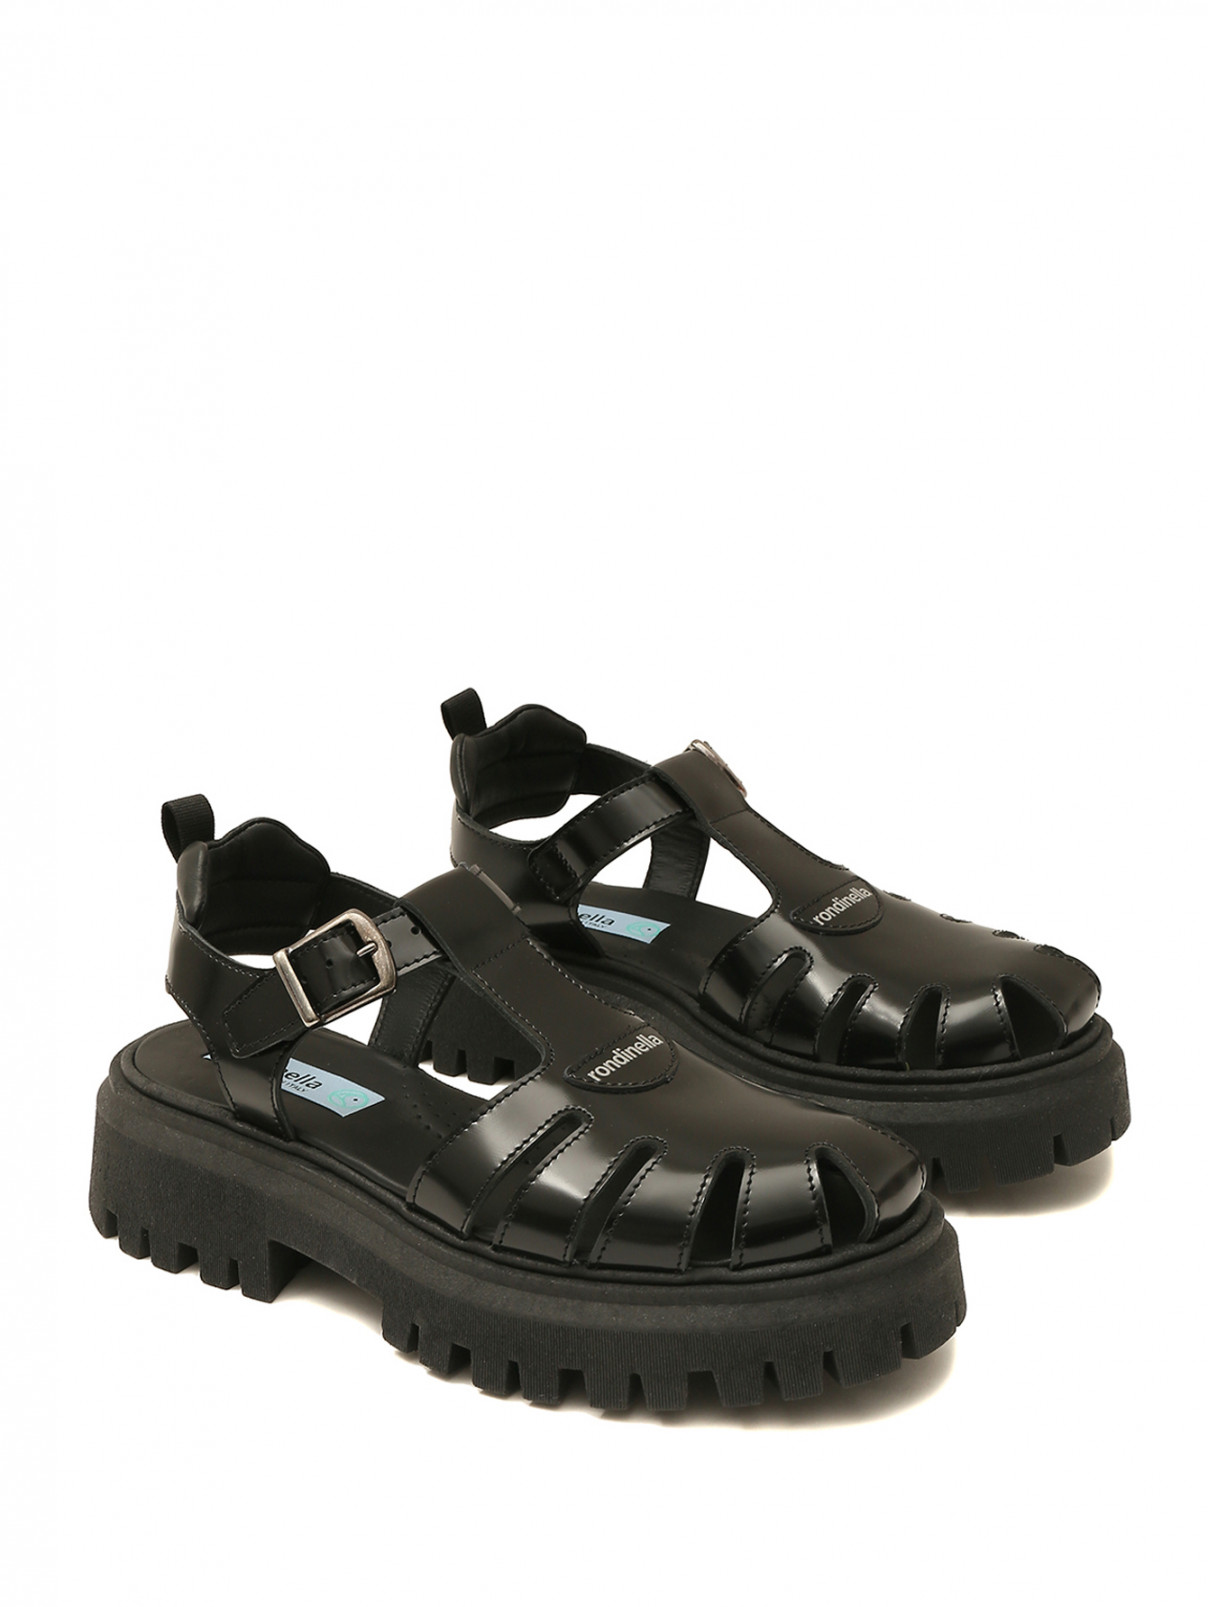 Кожаные сандалии на массивной подошве Rondinella  –  Общий вид  – Цвет:  Черный